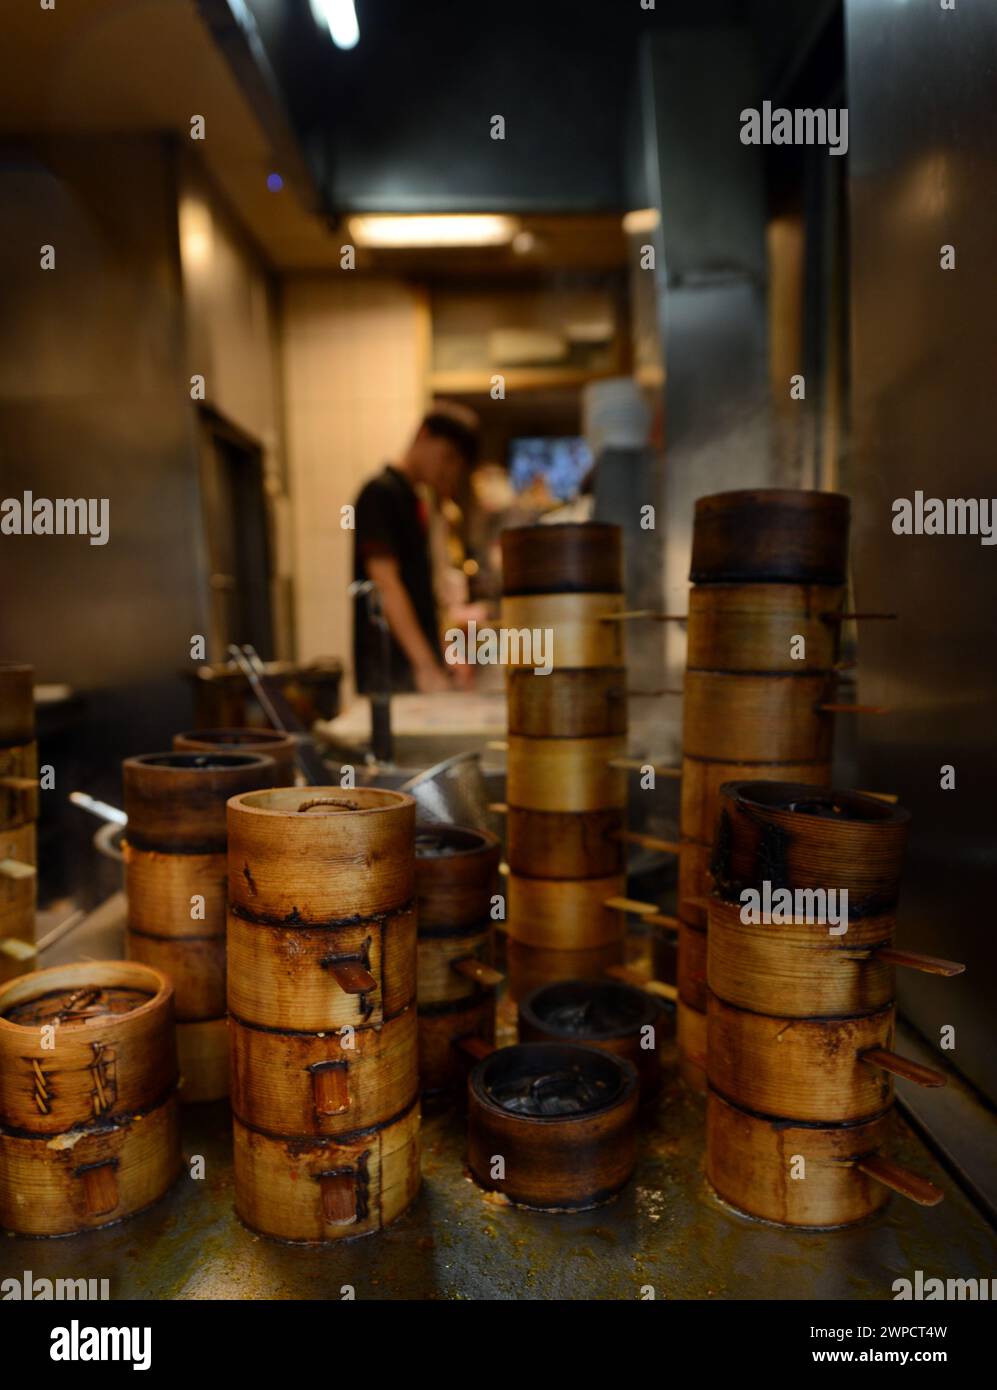 Gedämpfte Teigtaschen in traditionellen Bambus-Dampftöpfen im Yongkang Beef Noodles Restaurant auf der Jinshan S Rd, Taipeh, Taiwan. Stockfoto